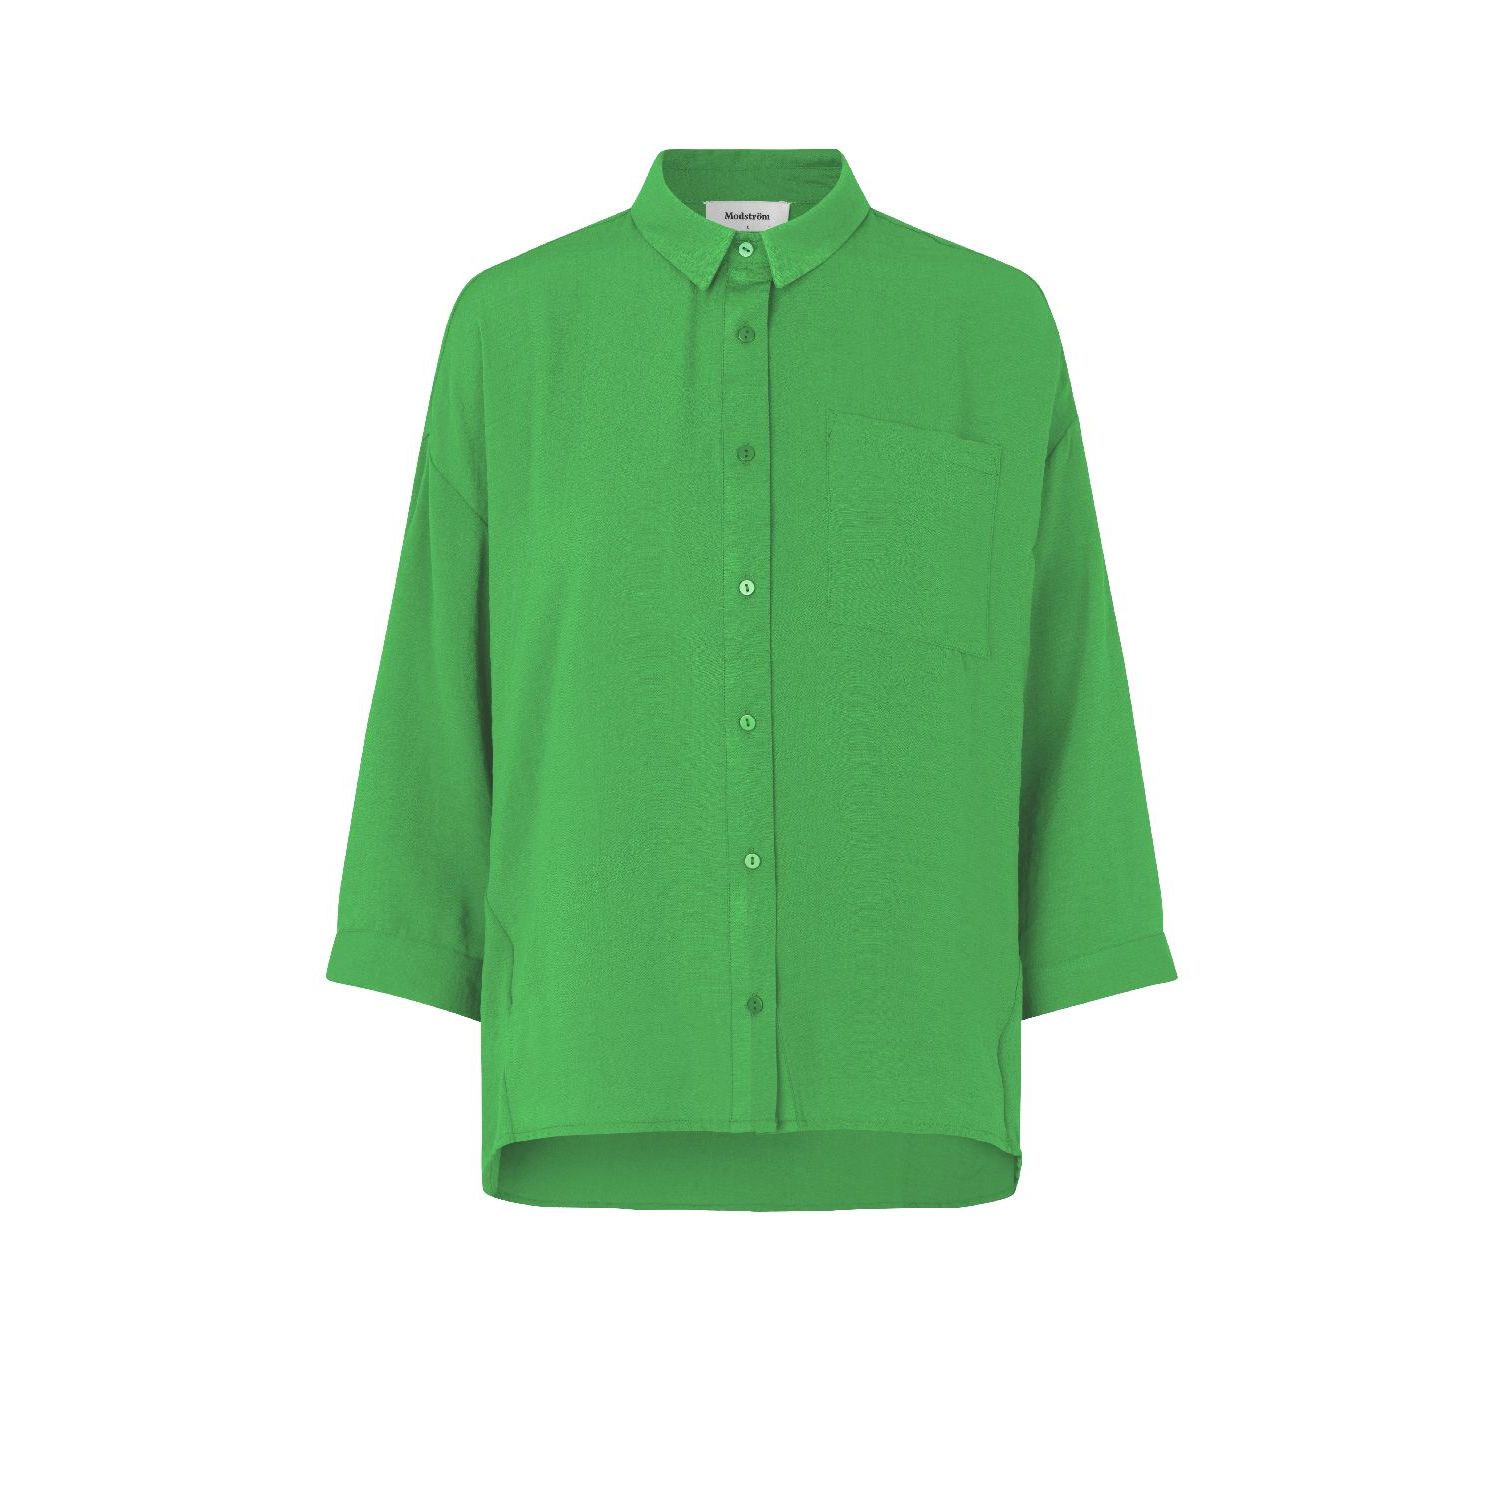 Modström alexis shirt classic green